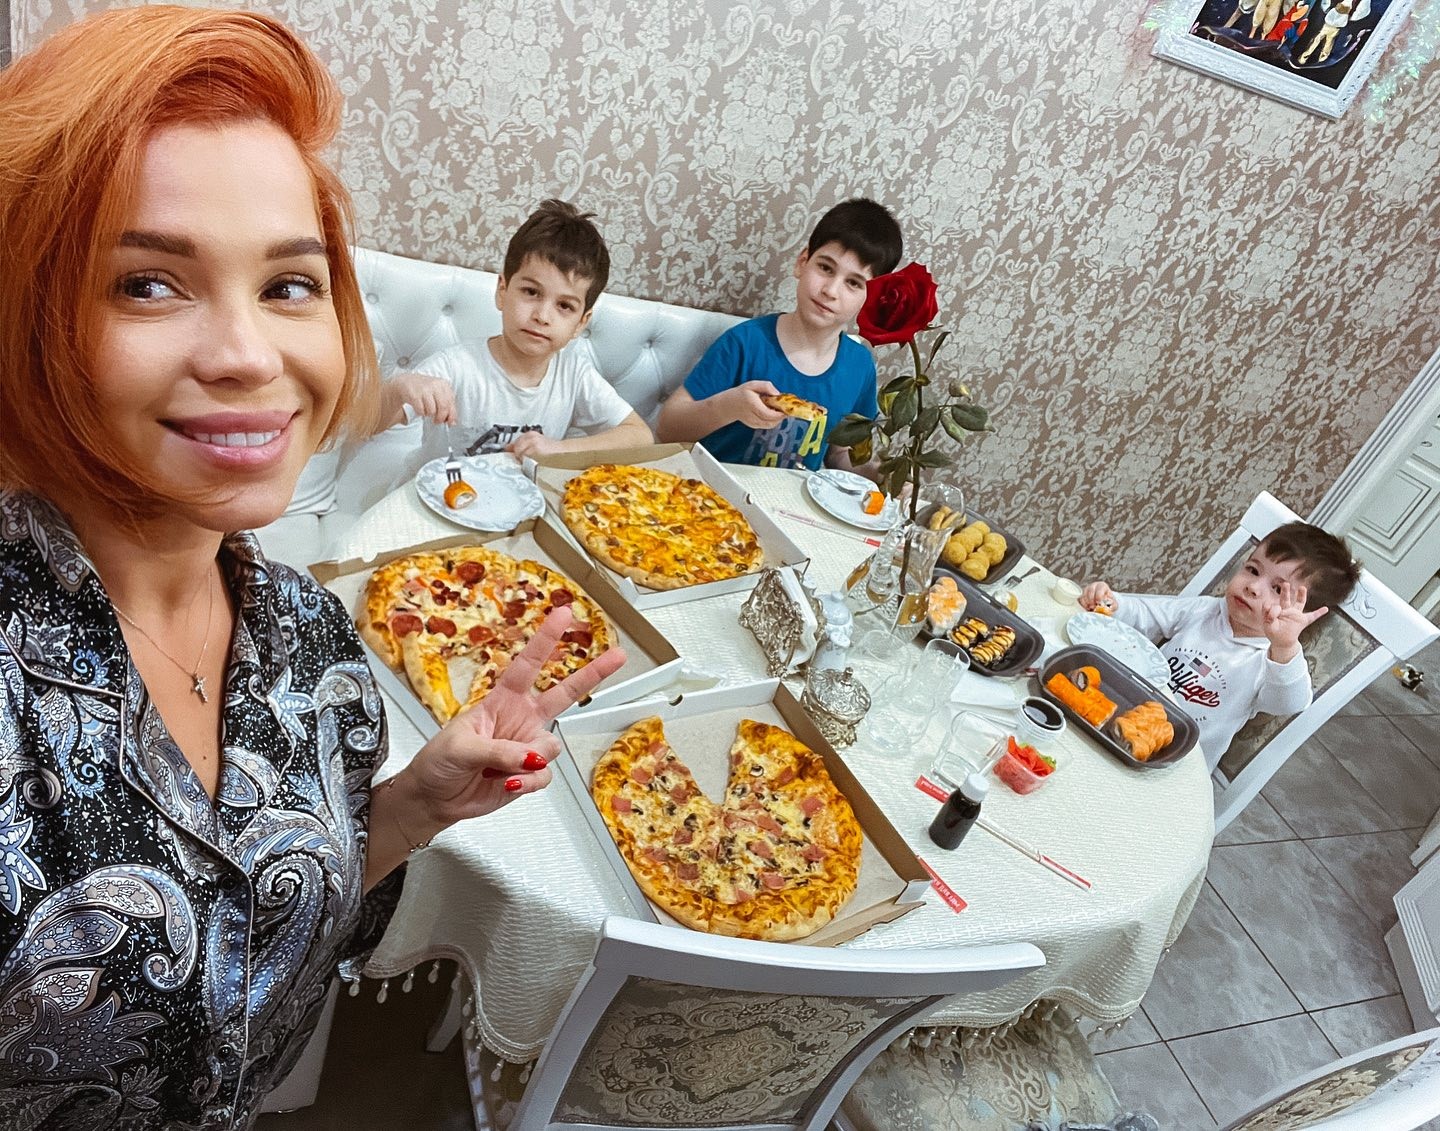 "Свободны и счастливы без тебя": накануне развода Юлия Салибекова публично прошлась по супругу Тиграну